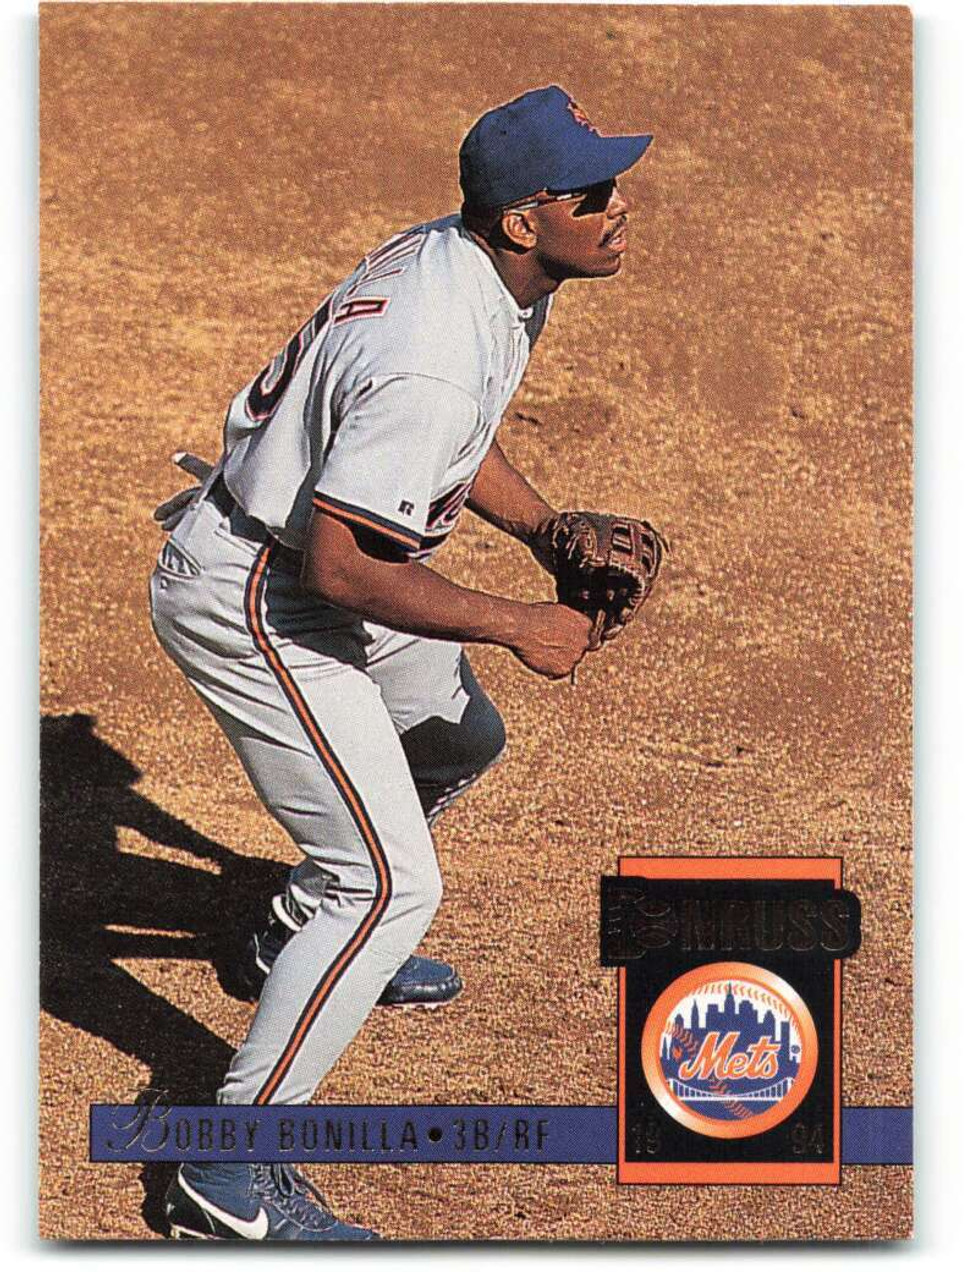 1994 Donruss #347 Bobby Bonilla VG New York Mets - Under the Radar